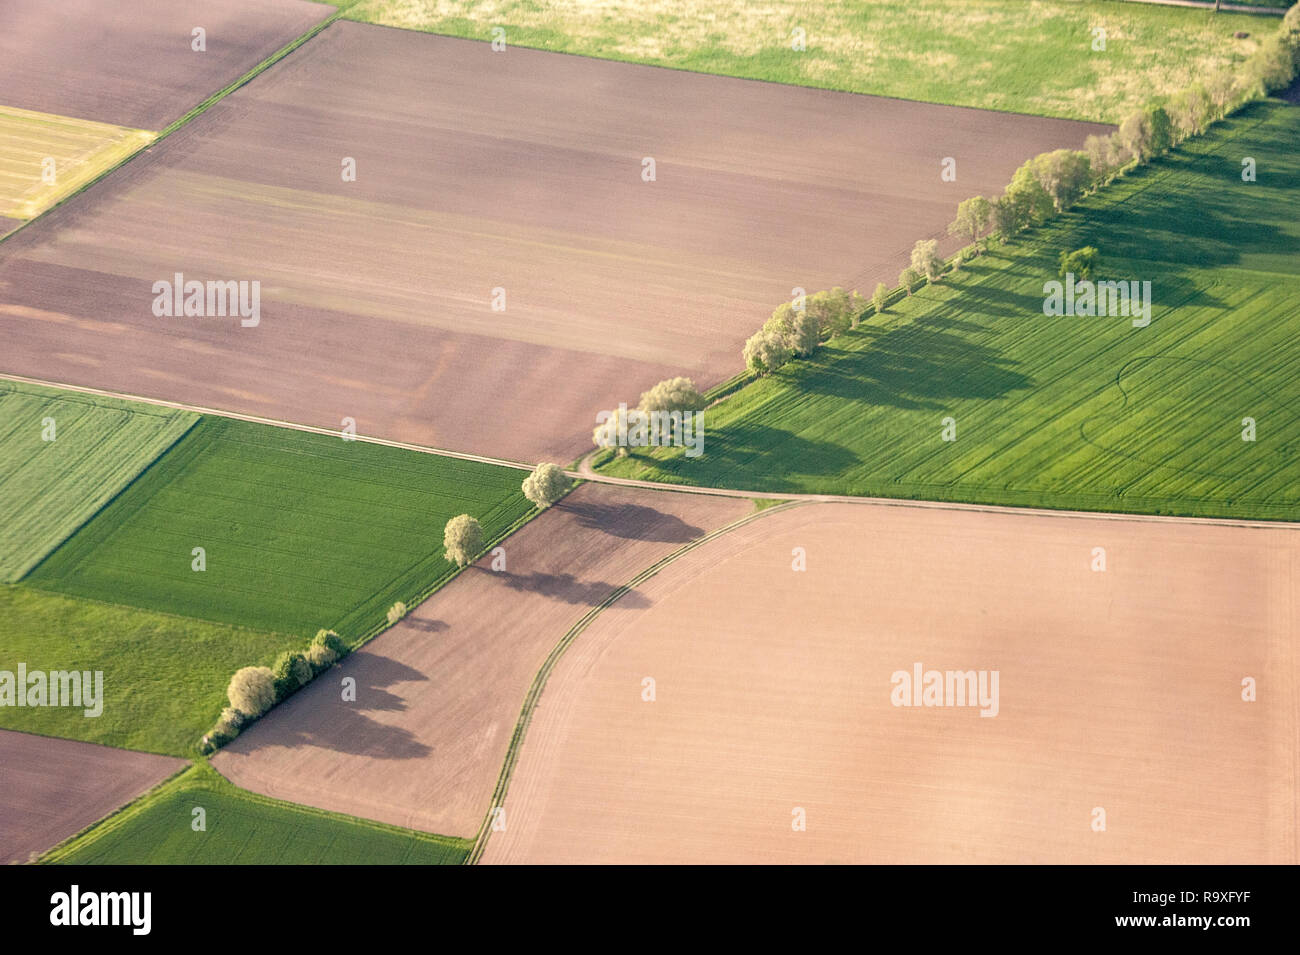 Vista superior de la zona agrícola a principios de verano de Munich, Alemania. Foto de stock